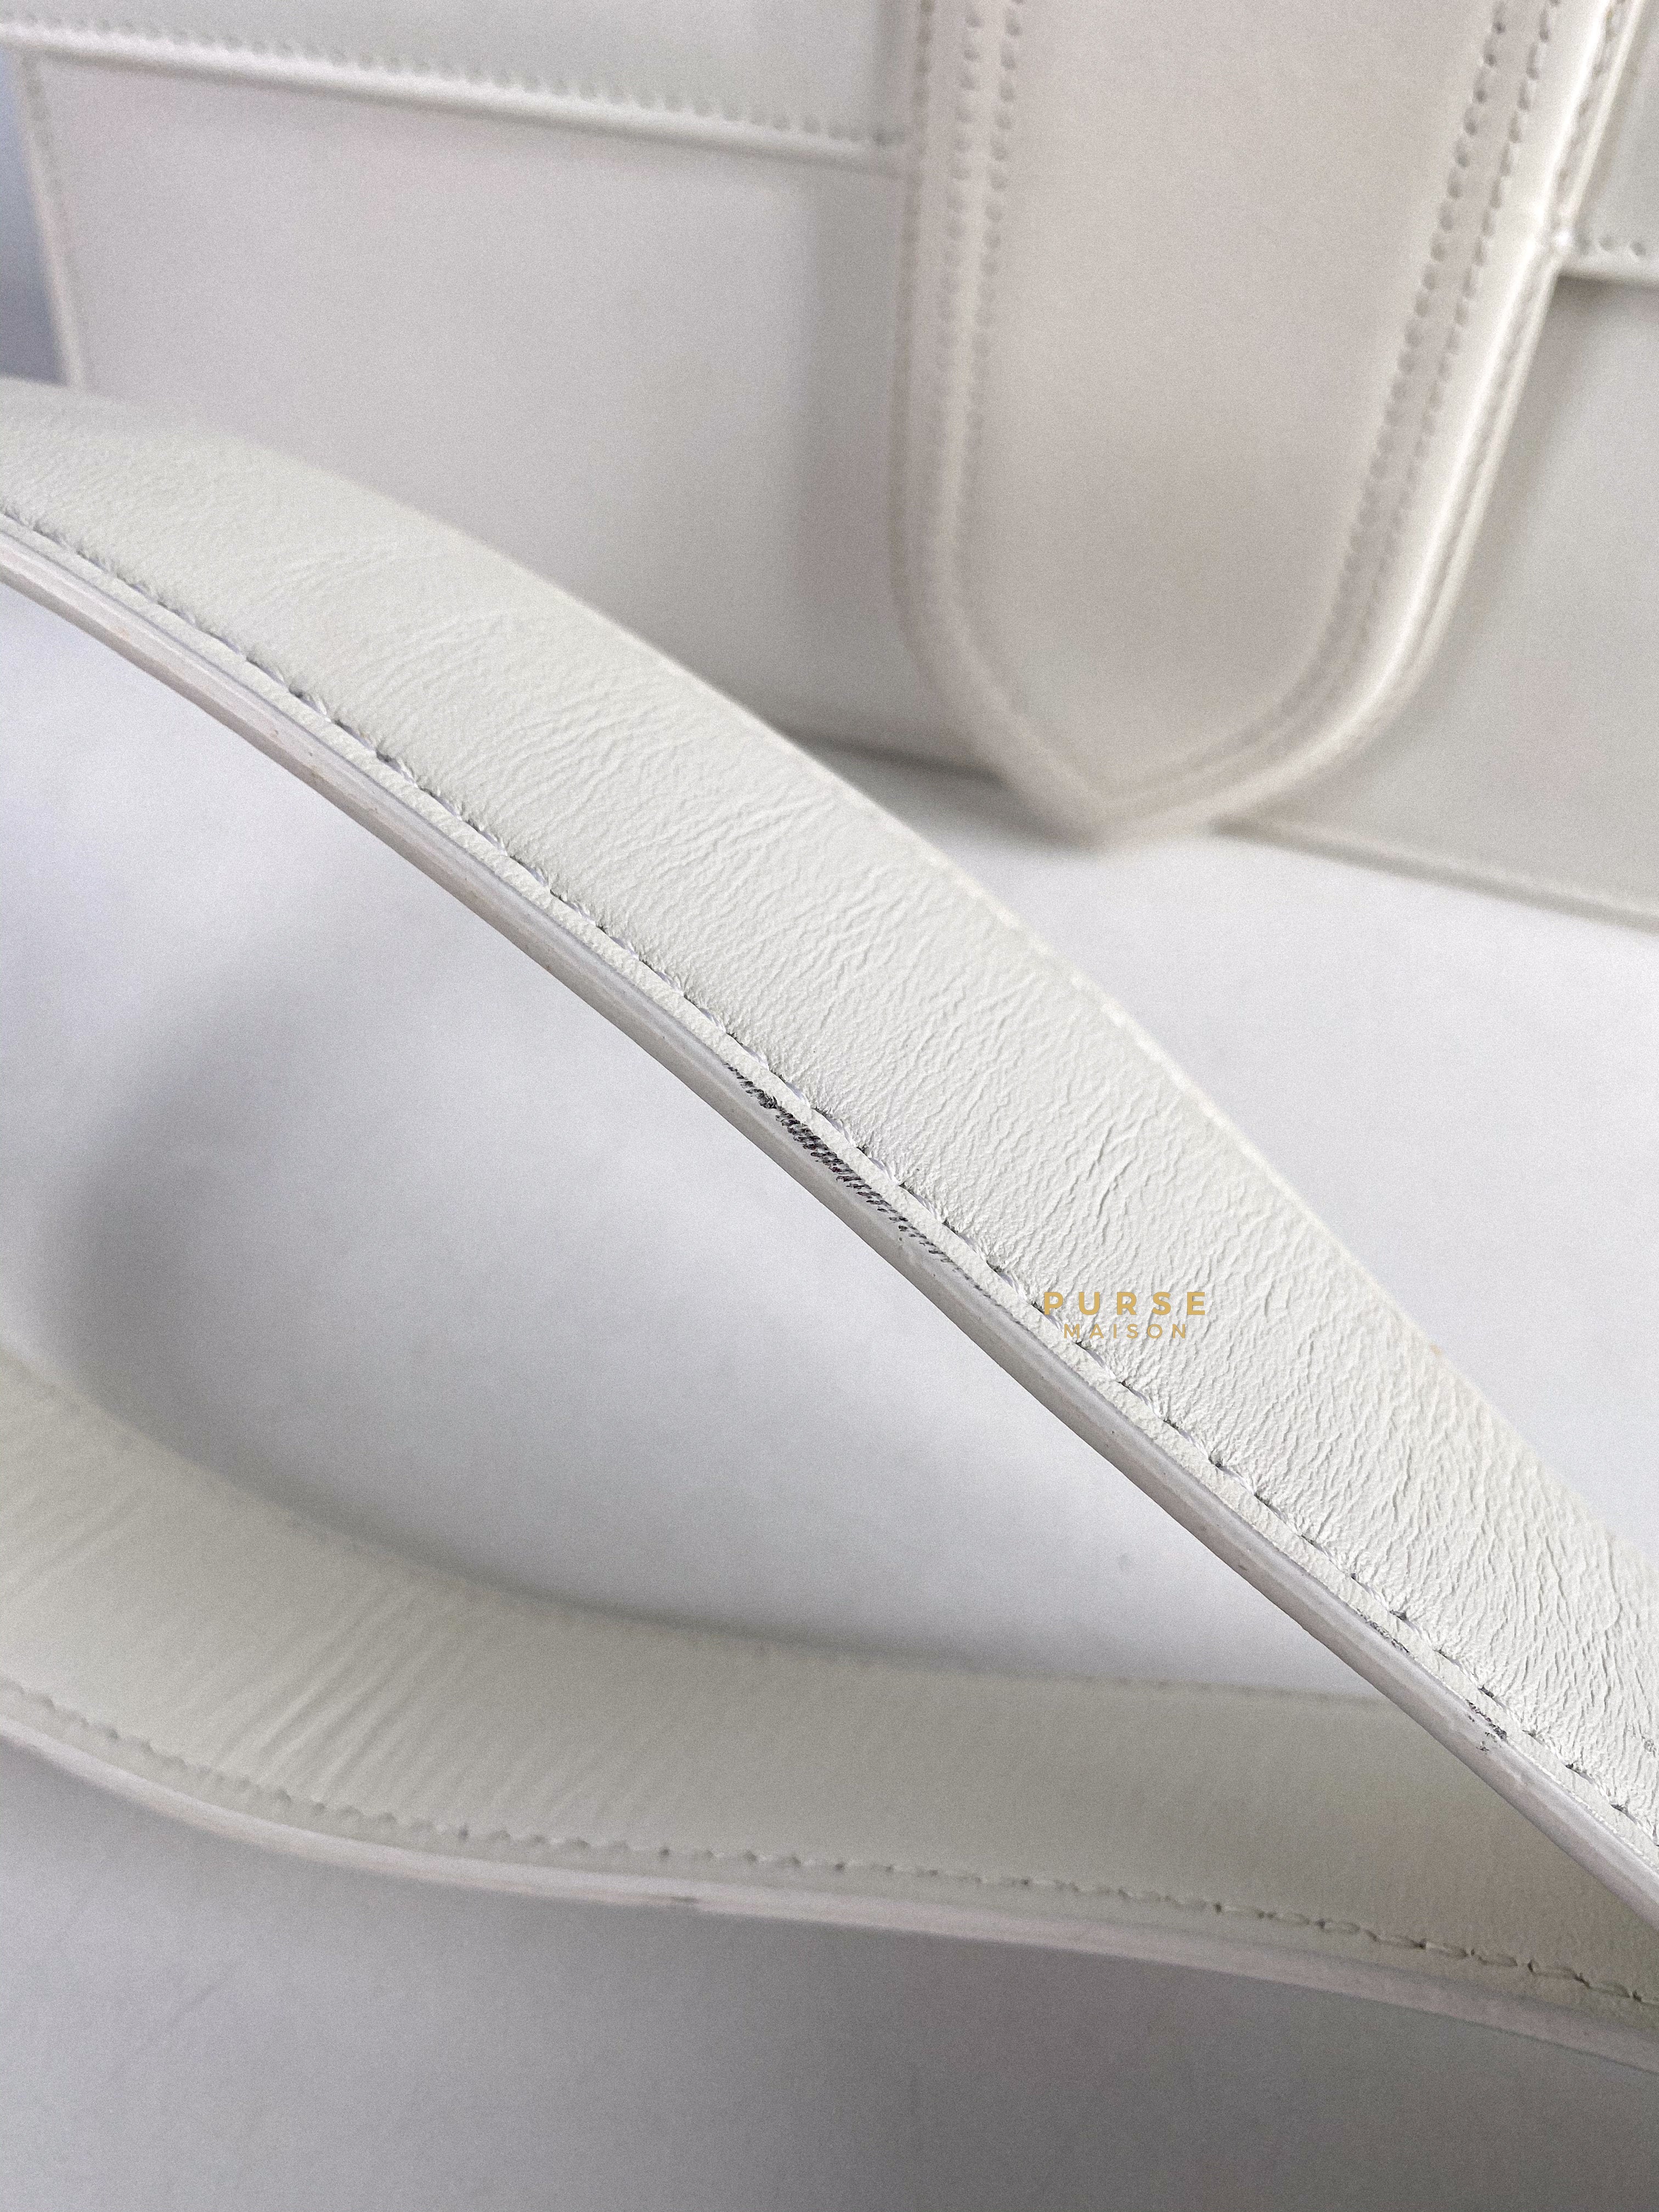 Jacquemus Le Bambinou Top Handle White | Purse Maison Luxury Bags Shop